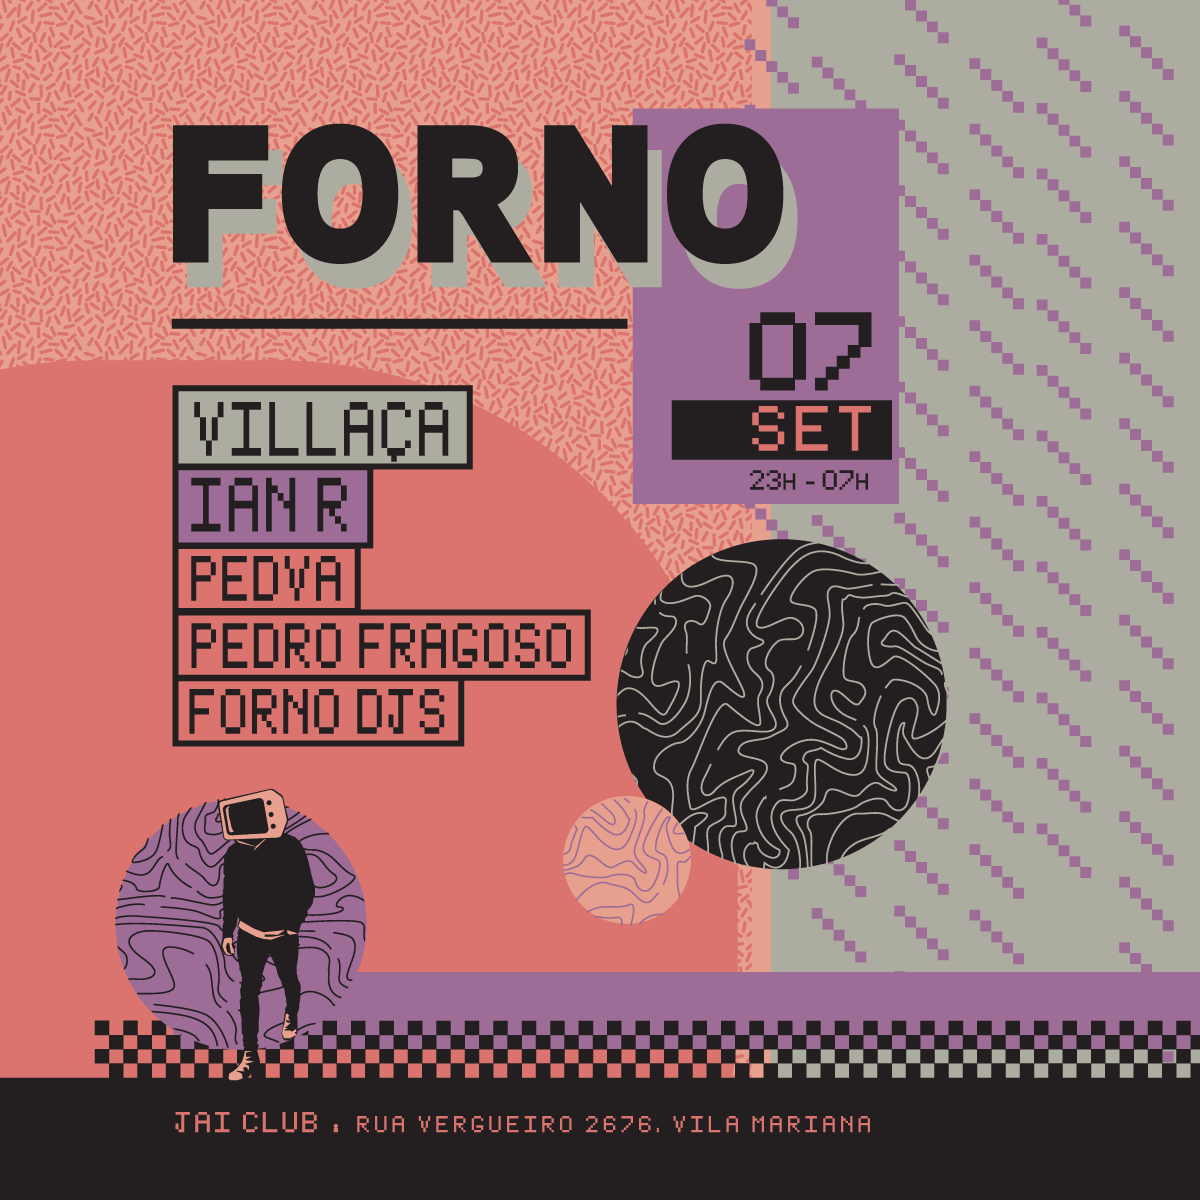 Forno-Capa-07-09-2019